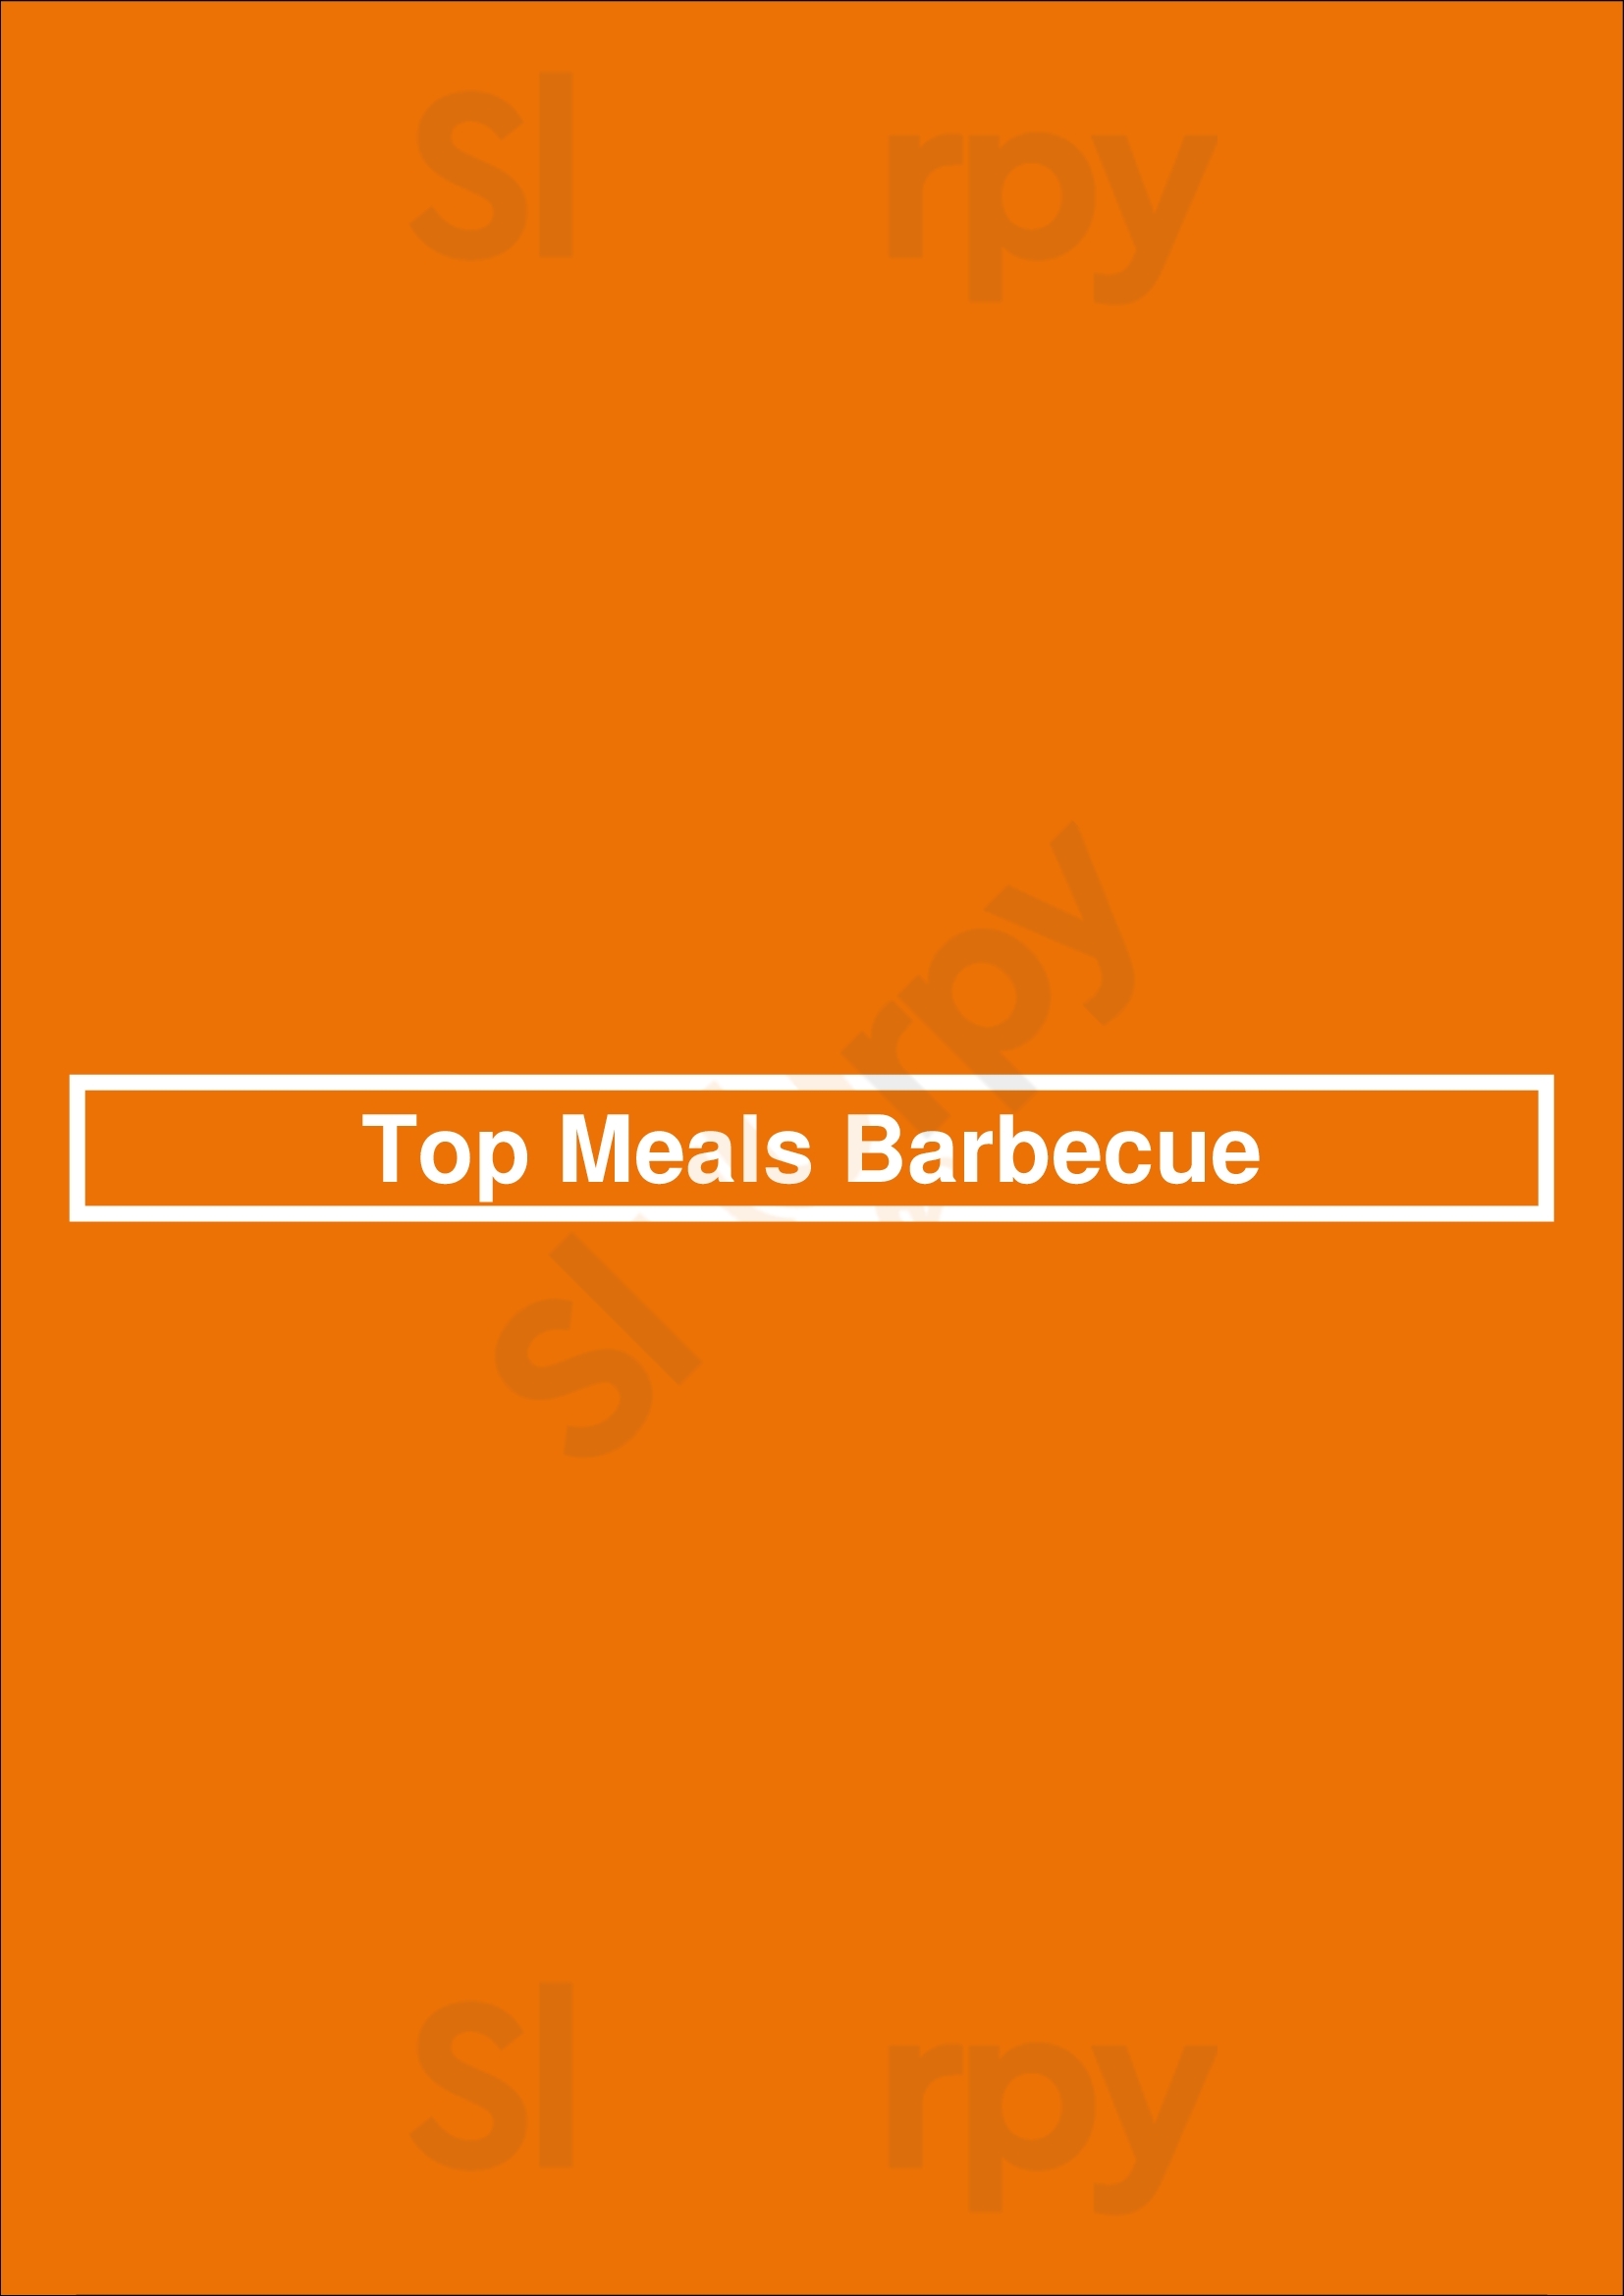 Top Meals Barbecue Doncaster Menu - 1